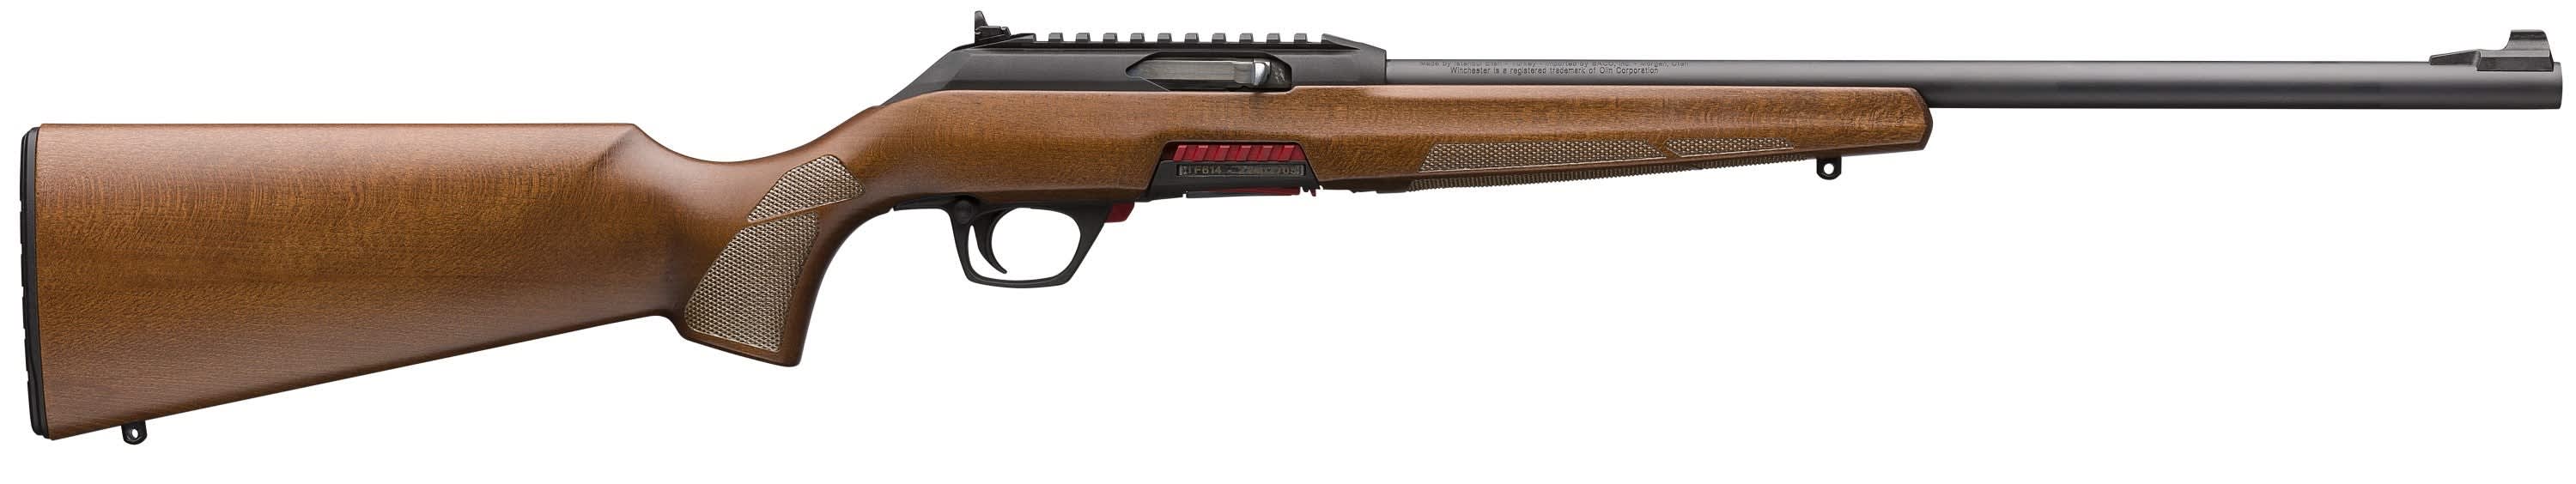 Winchester® Wildcat Sporter Semi-Automatic Rifle